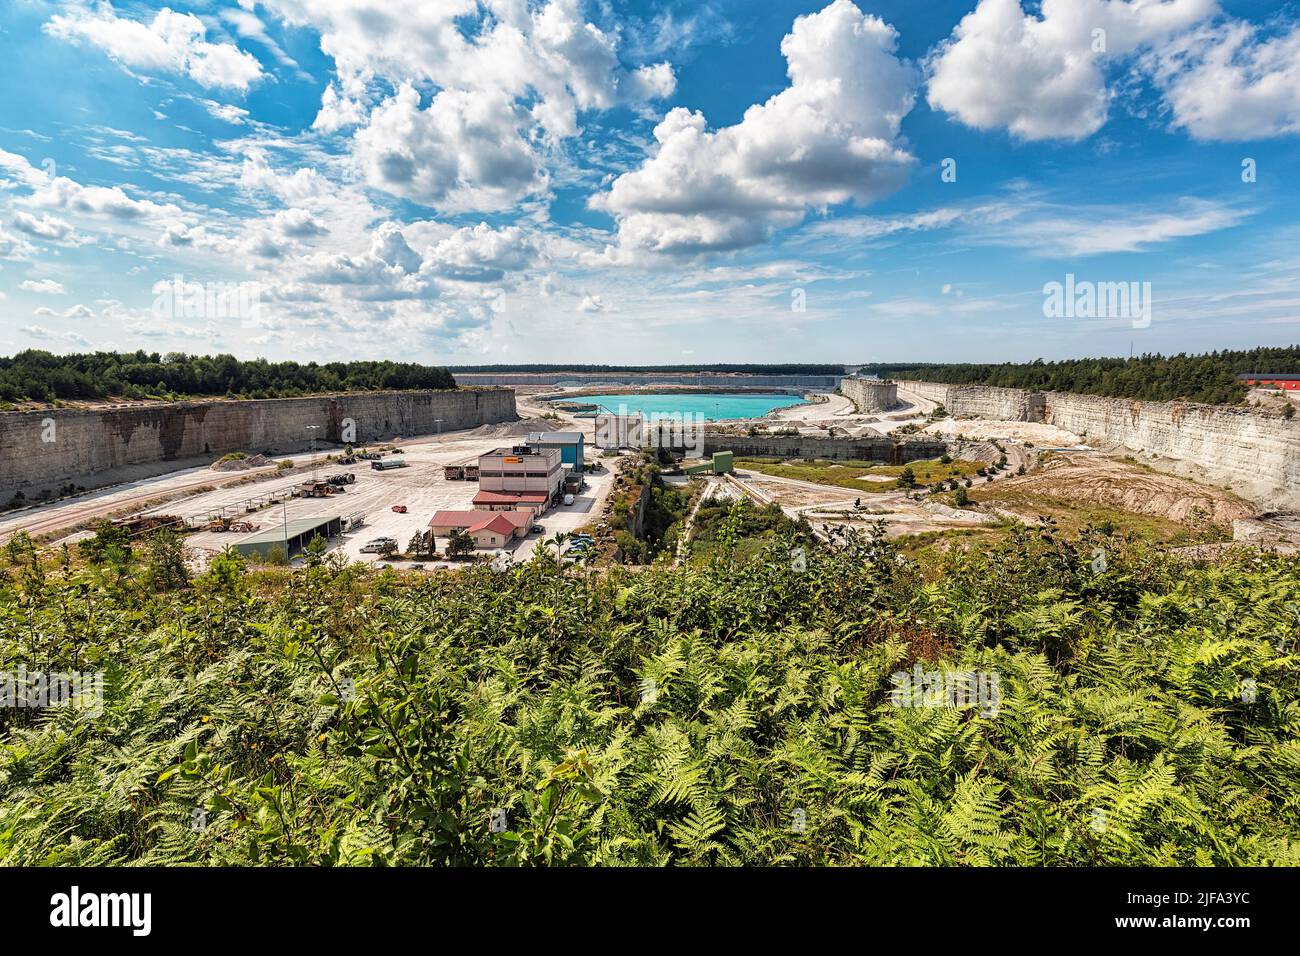 Zone de carrières de calcaire, point de vue de la carrière, production de ciment, usine de ciment Cementa, SLite, île Gotland, Suède Banque D'Images